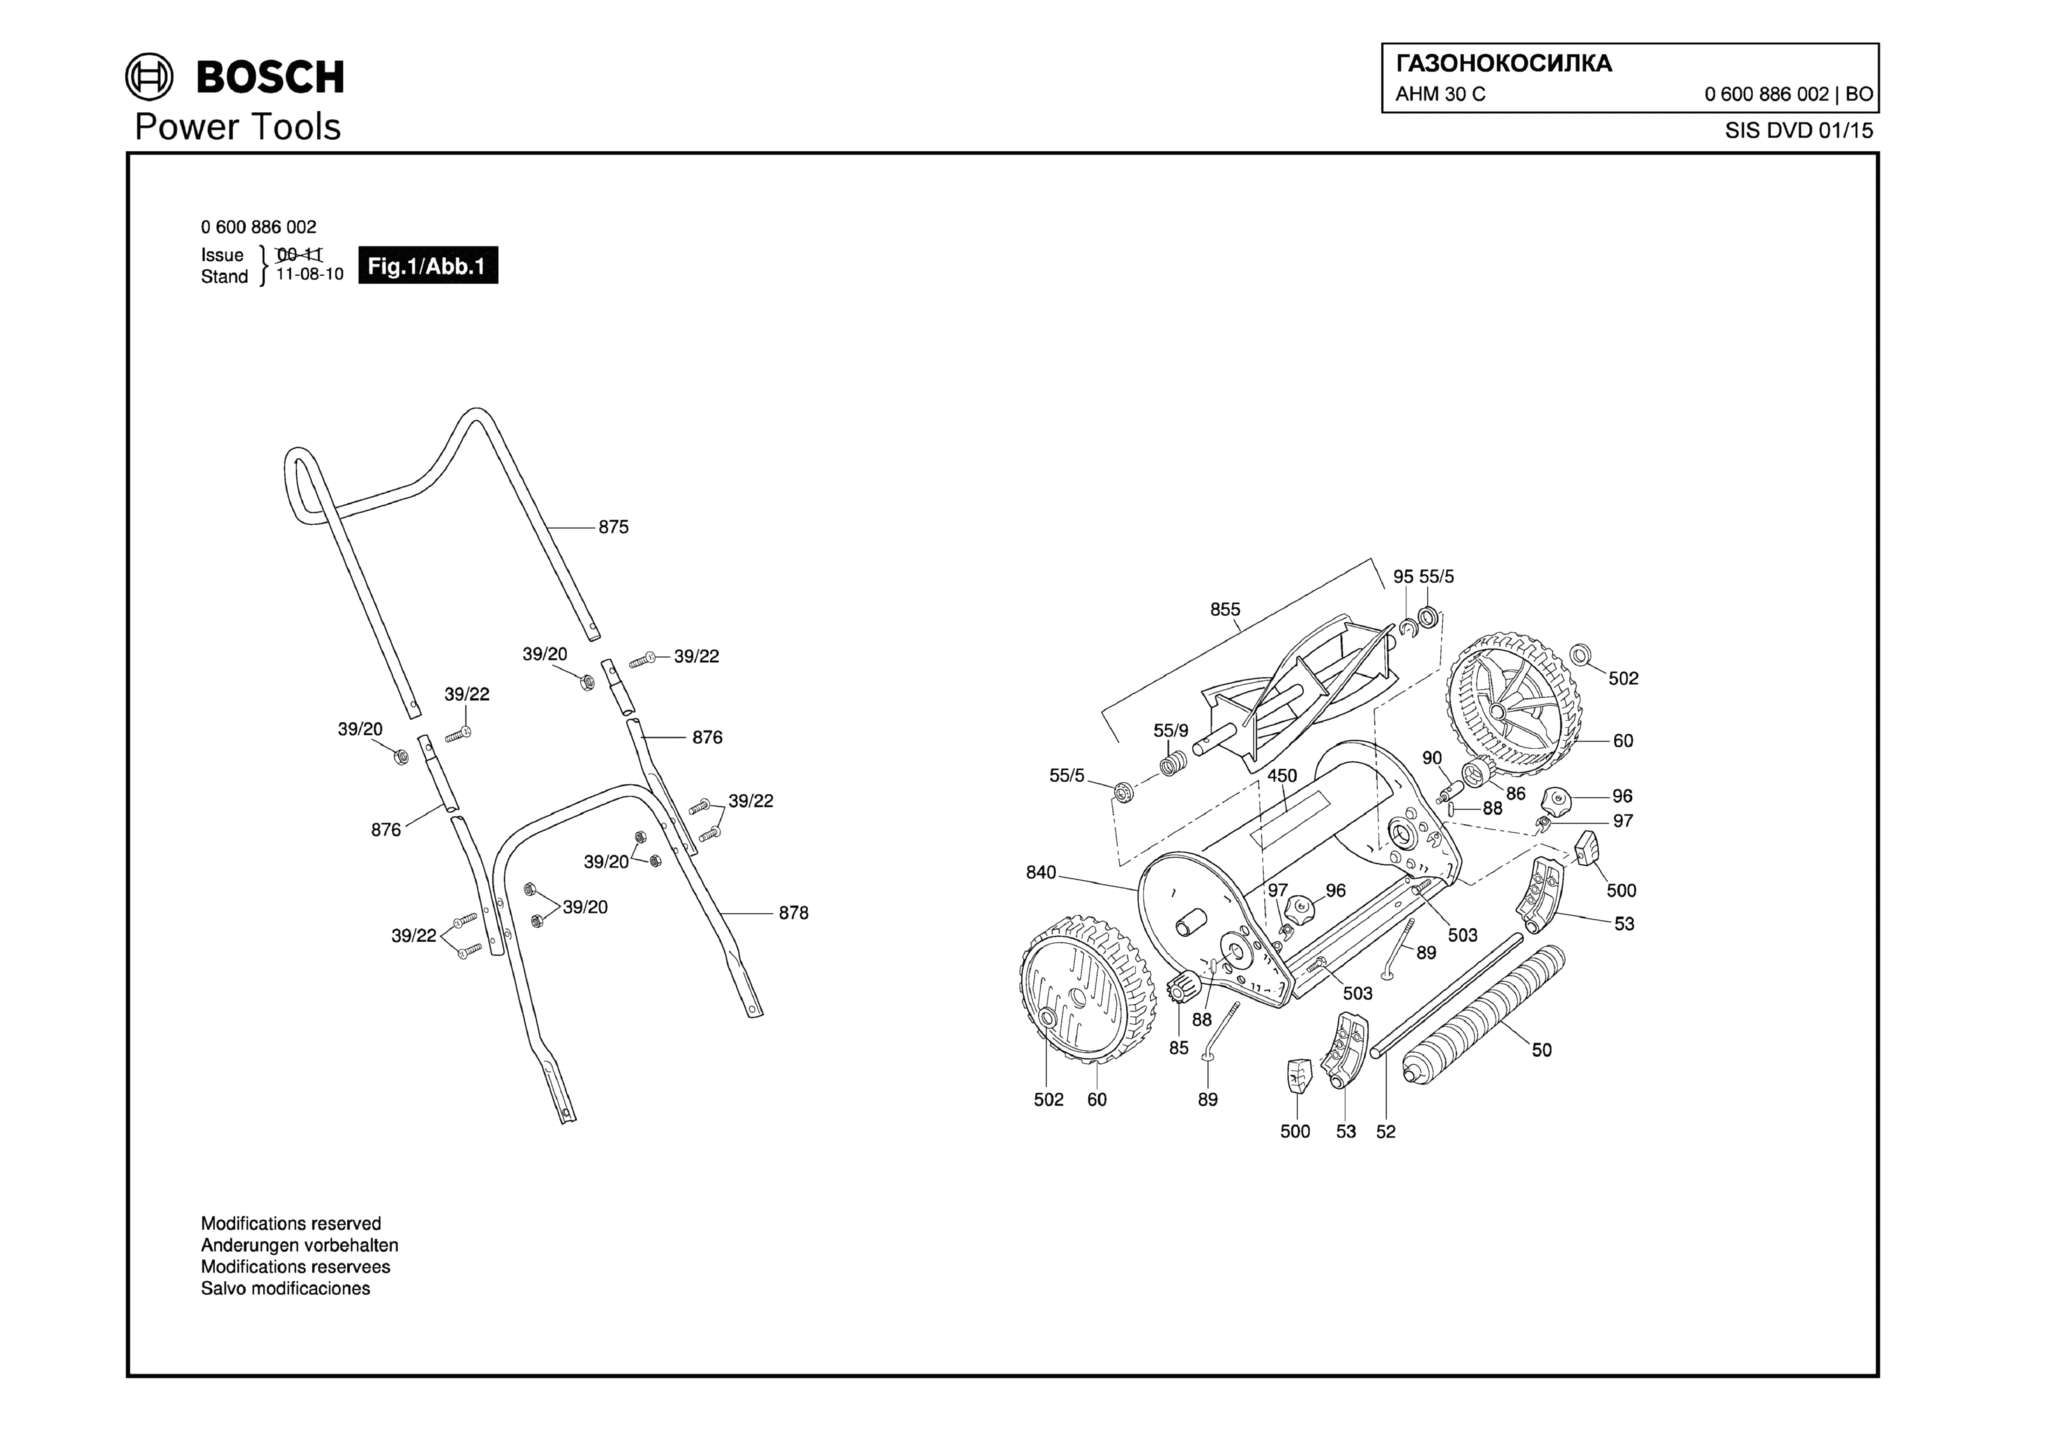 Запчасти, схема и деталировка Bosch AHM 30 C (ТИП 0600886002)